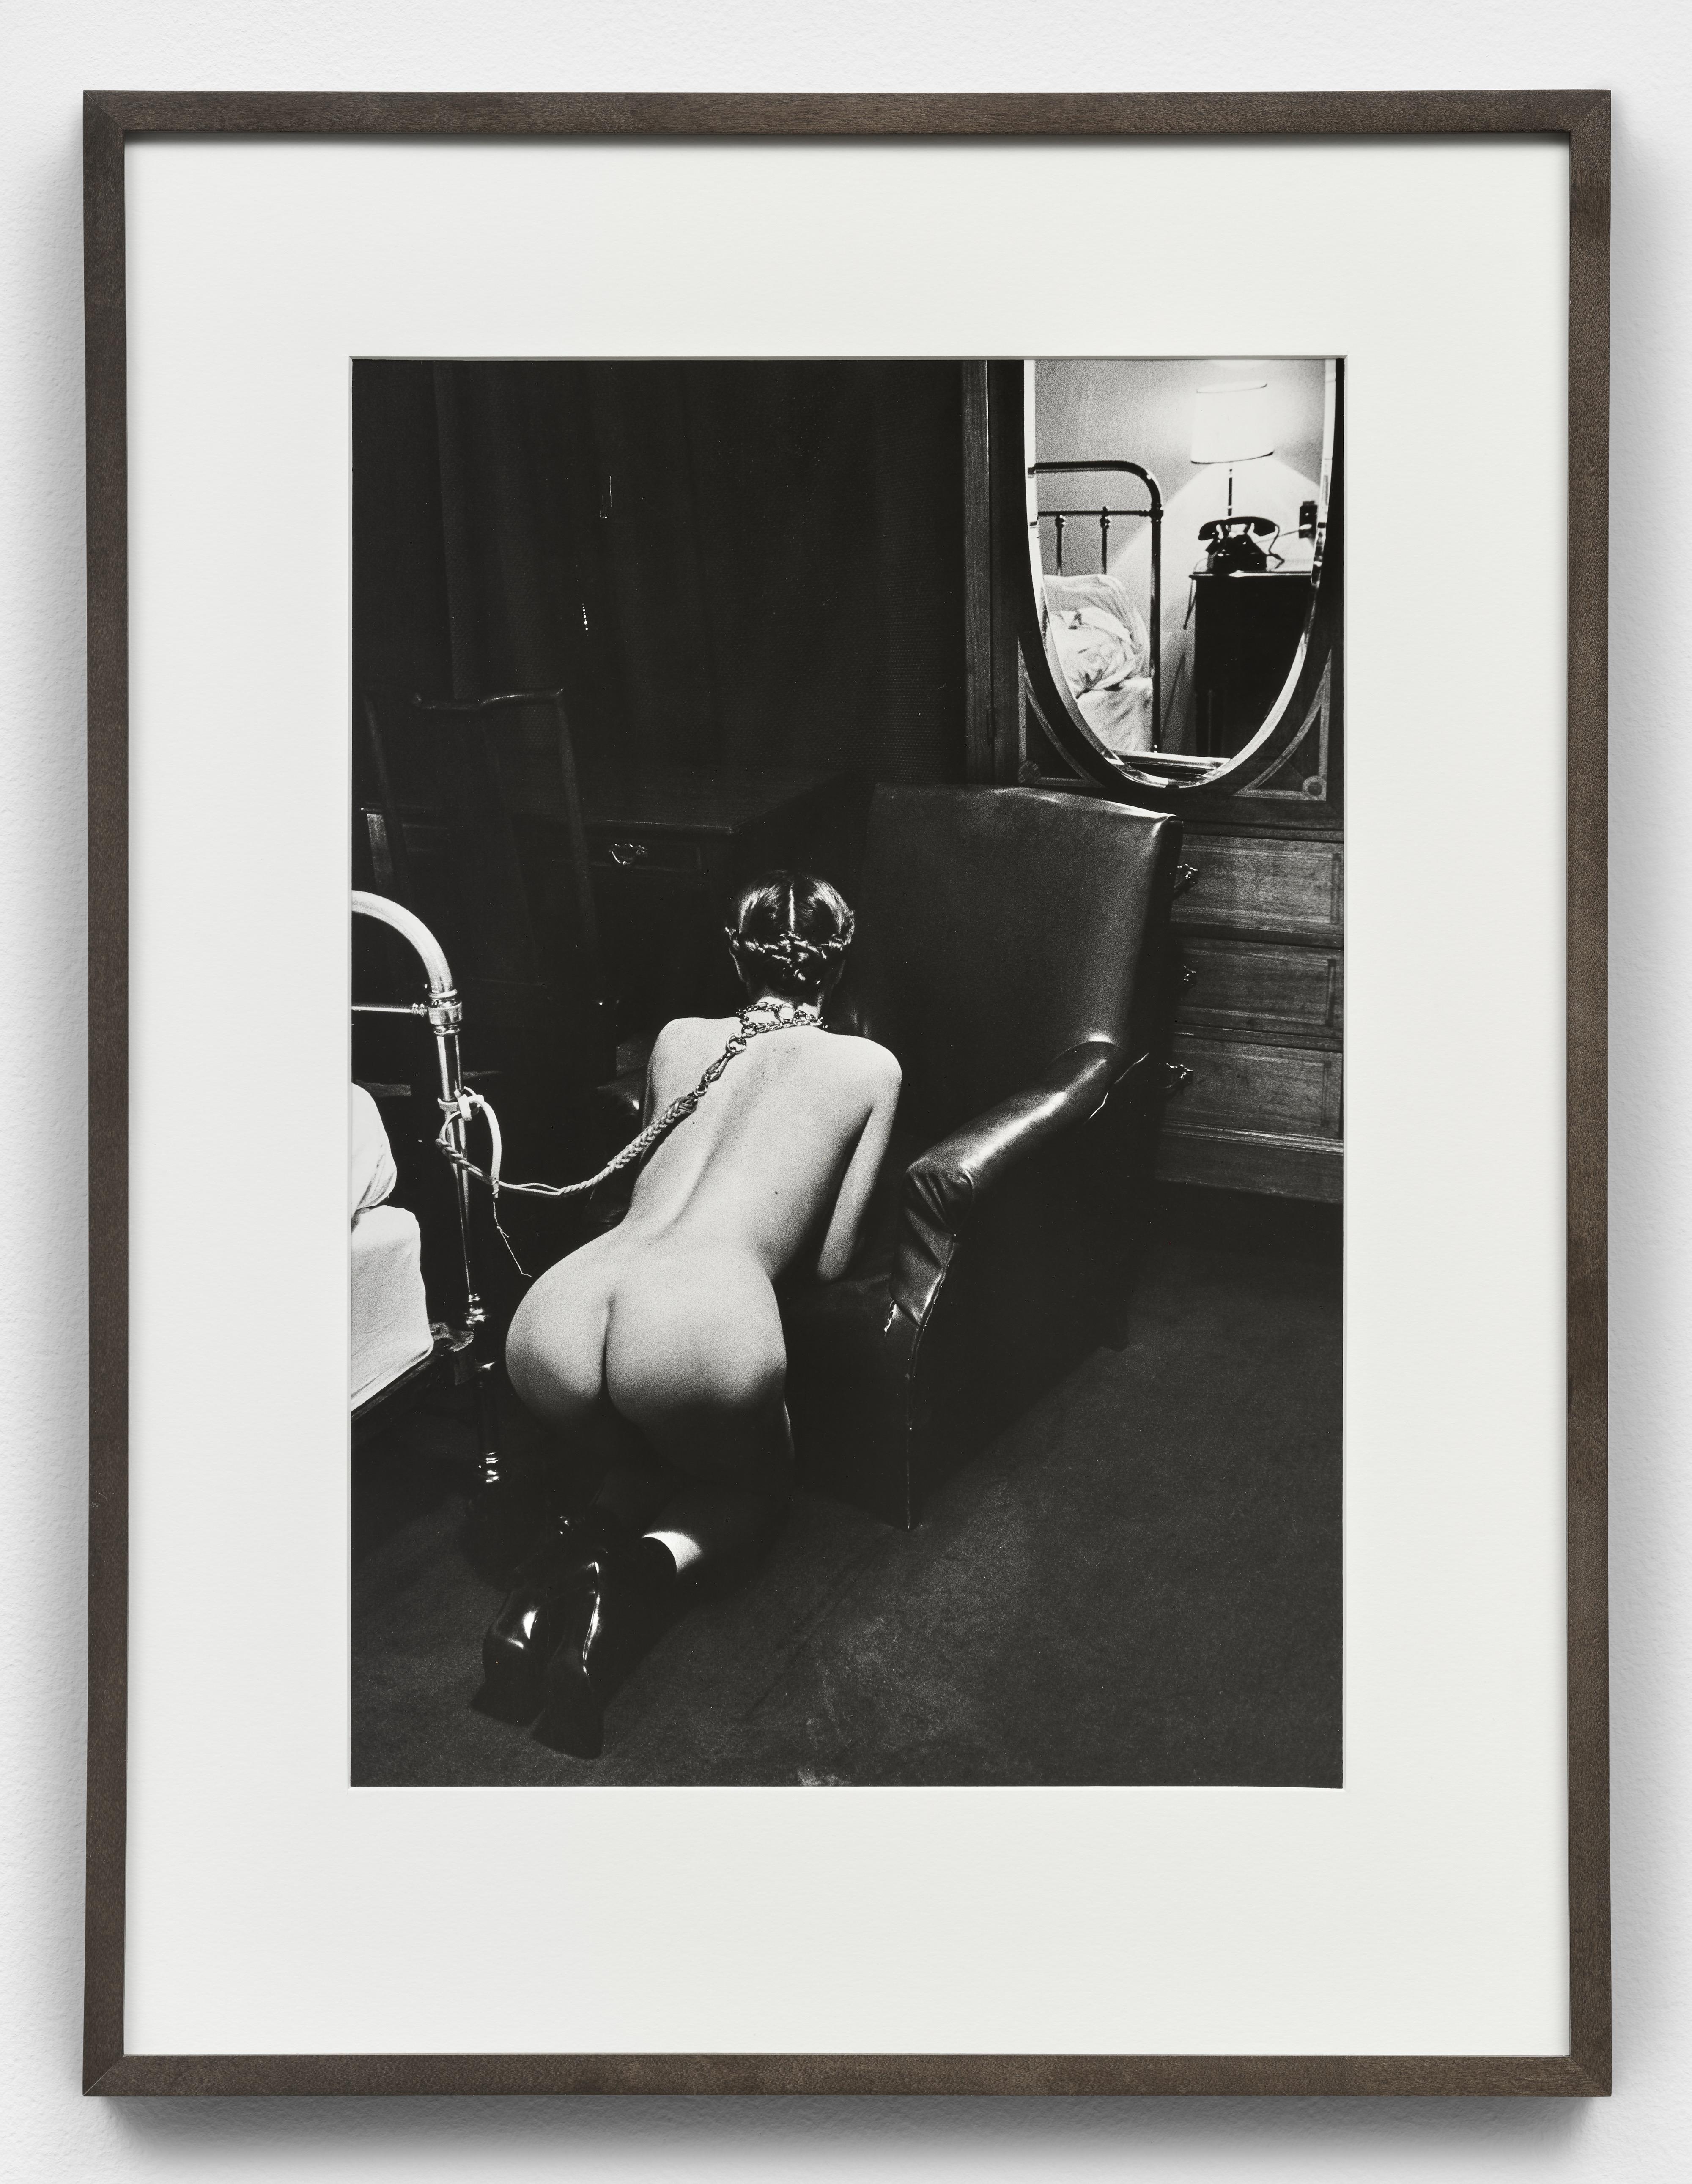 Helmut Newton Nude Photograph – Hotelzimmer, Place de la République, Paris